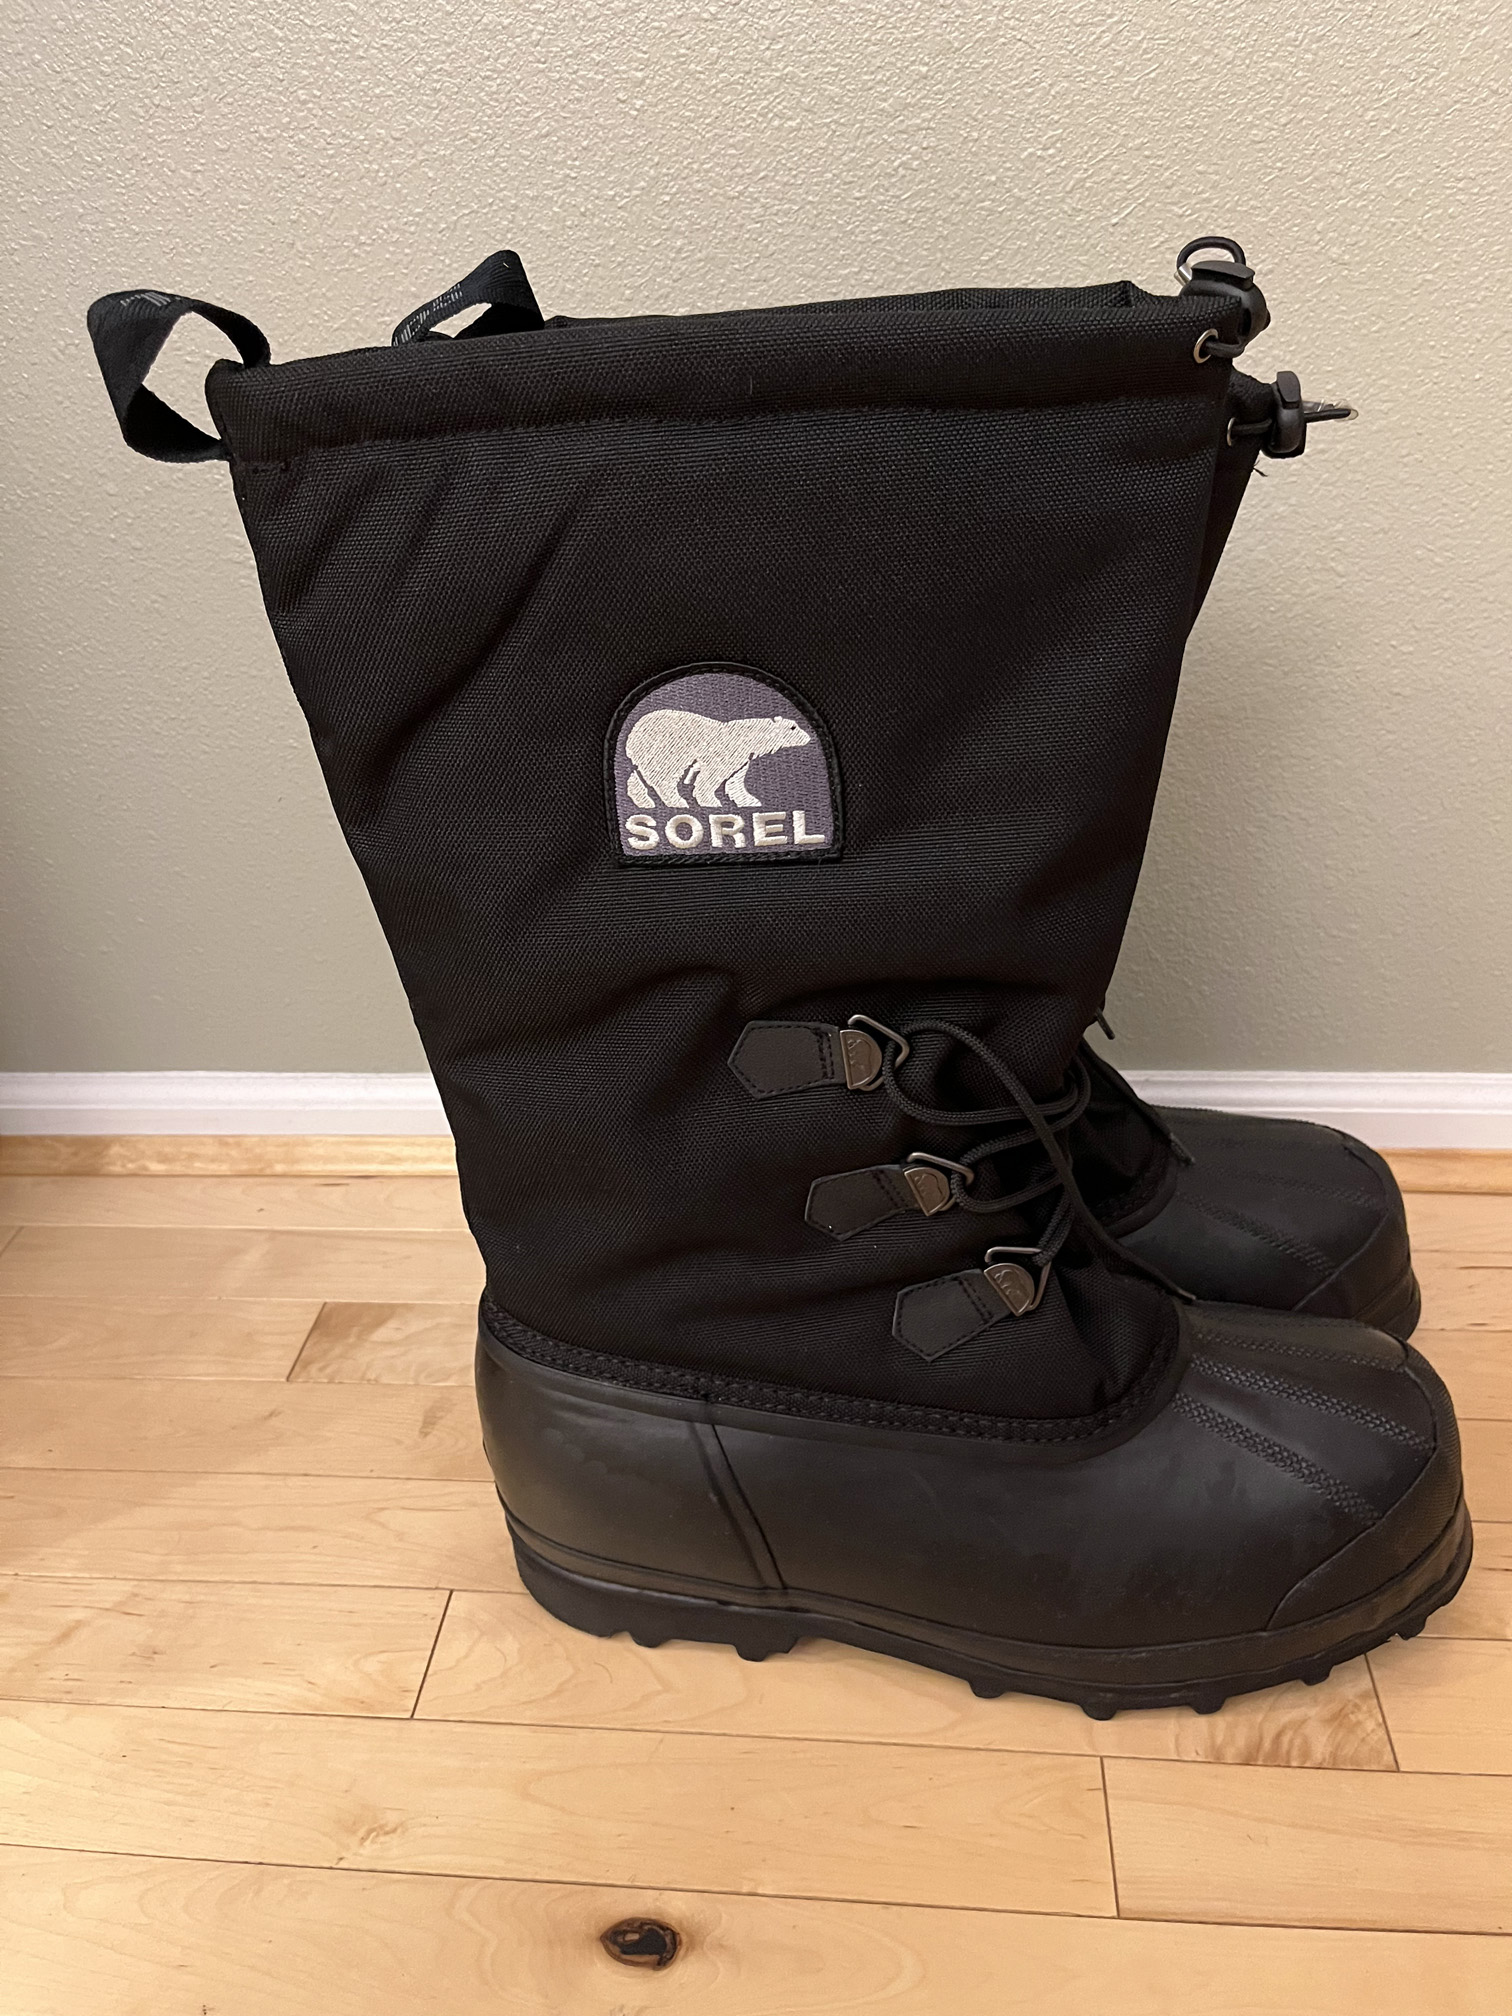 Glacier snow boots